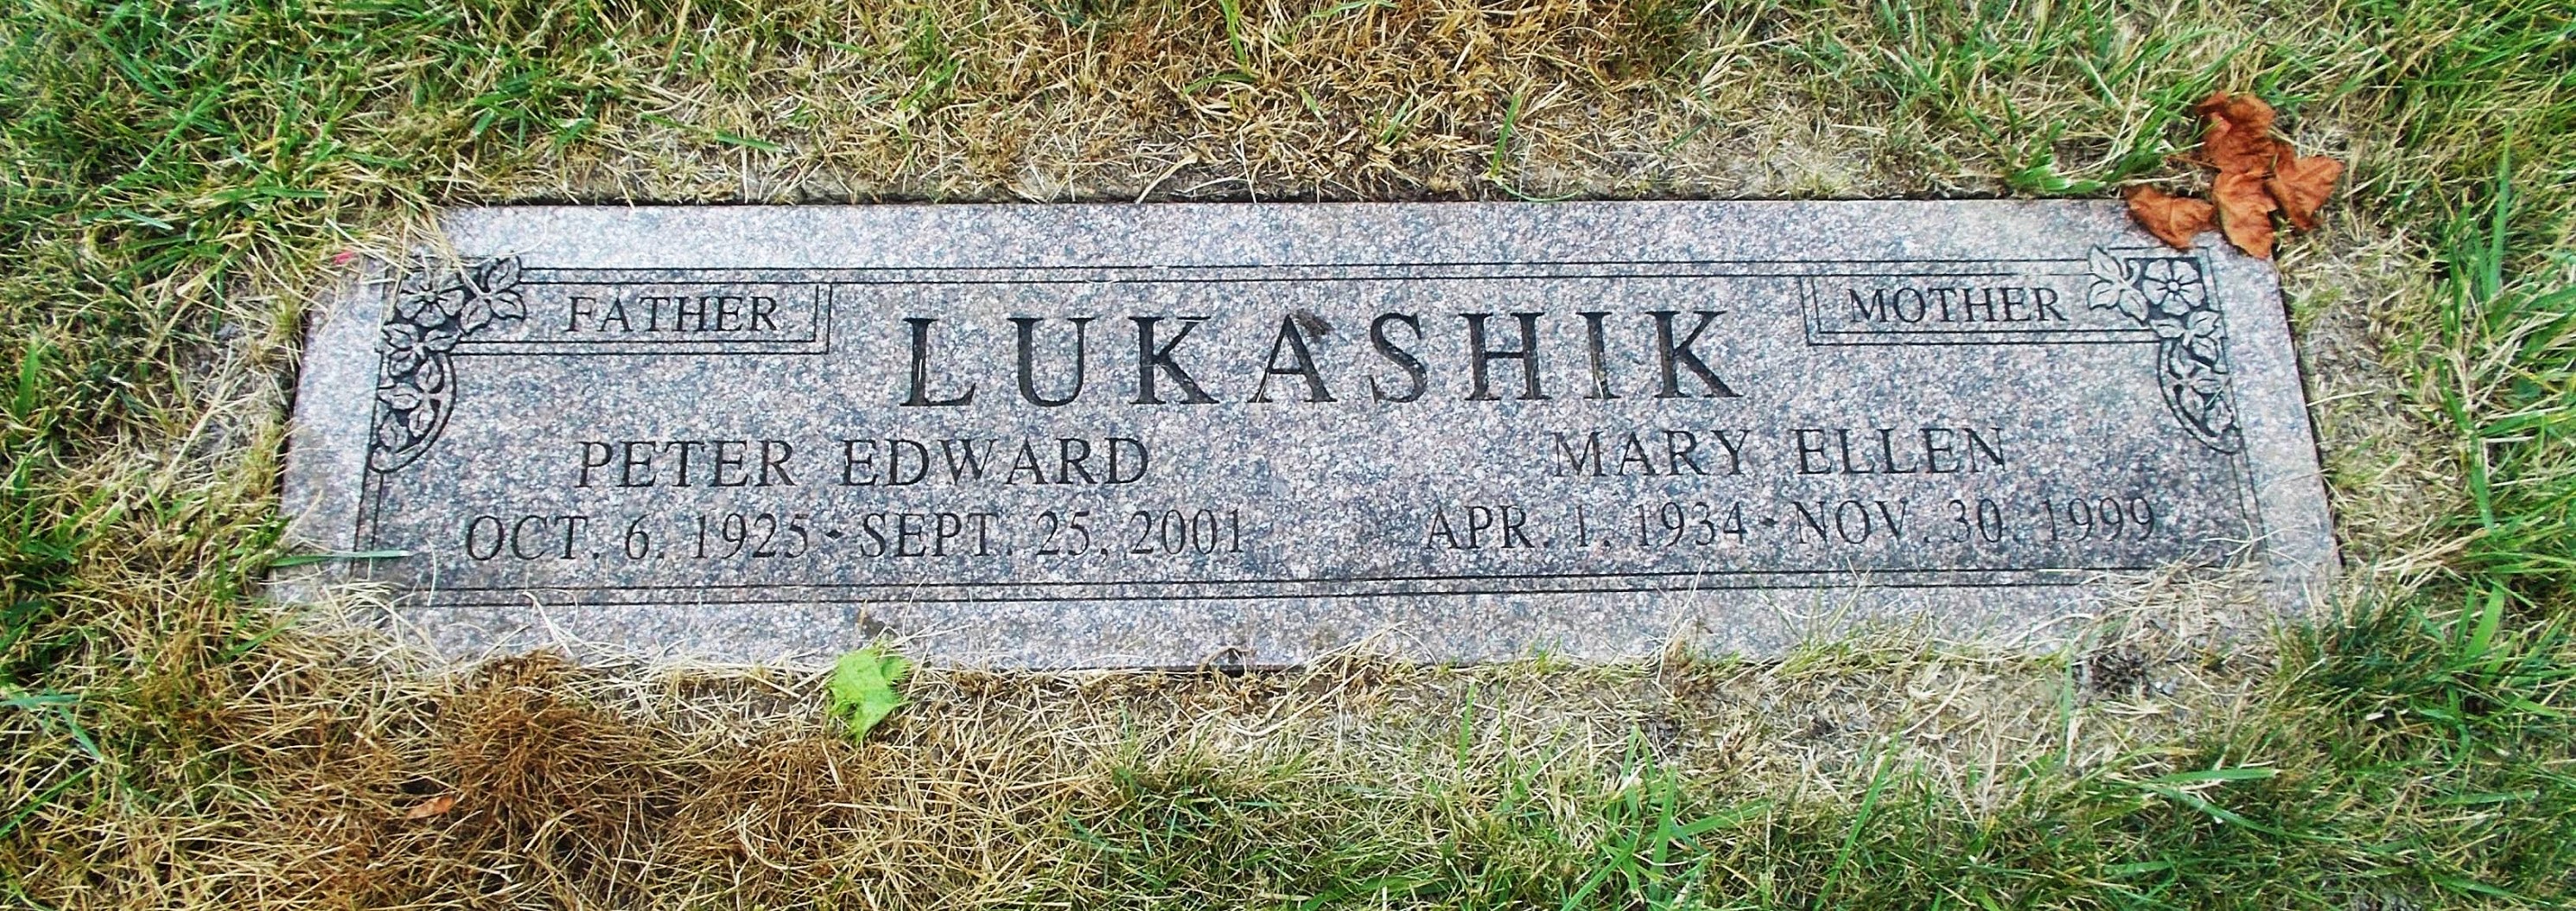 Peter Edward Lukashik